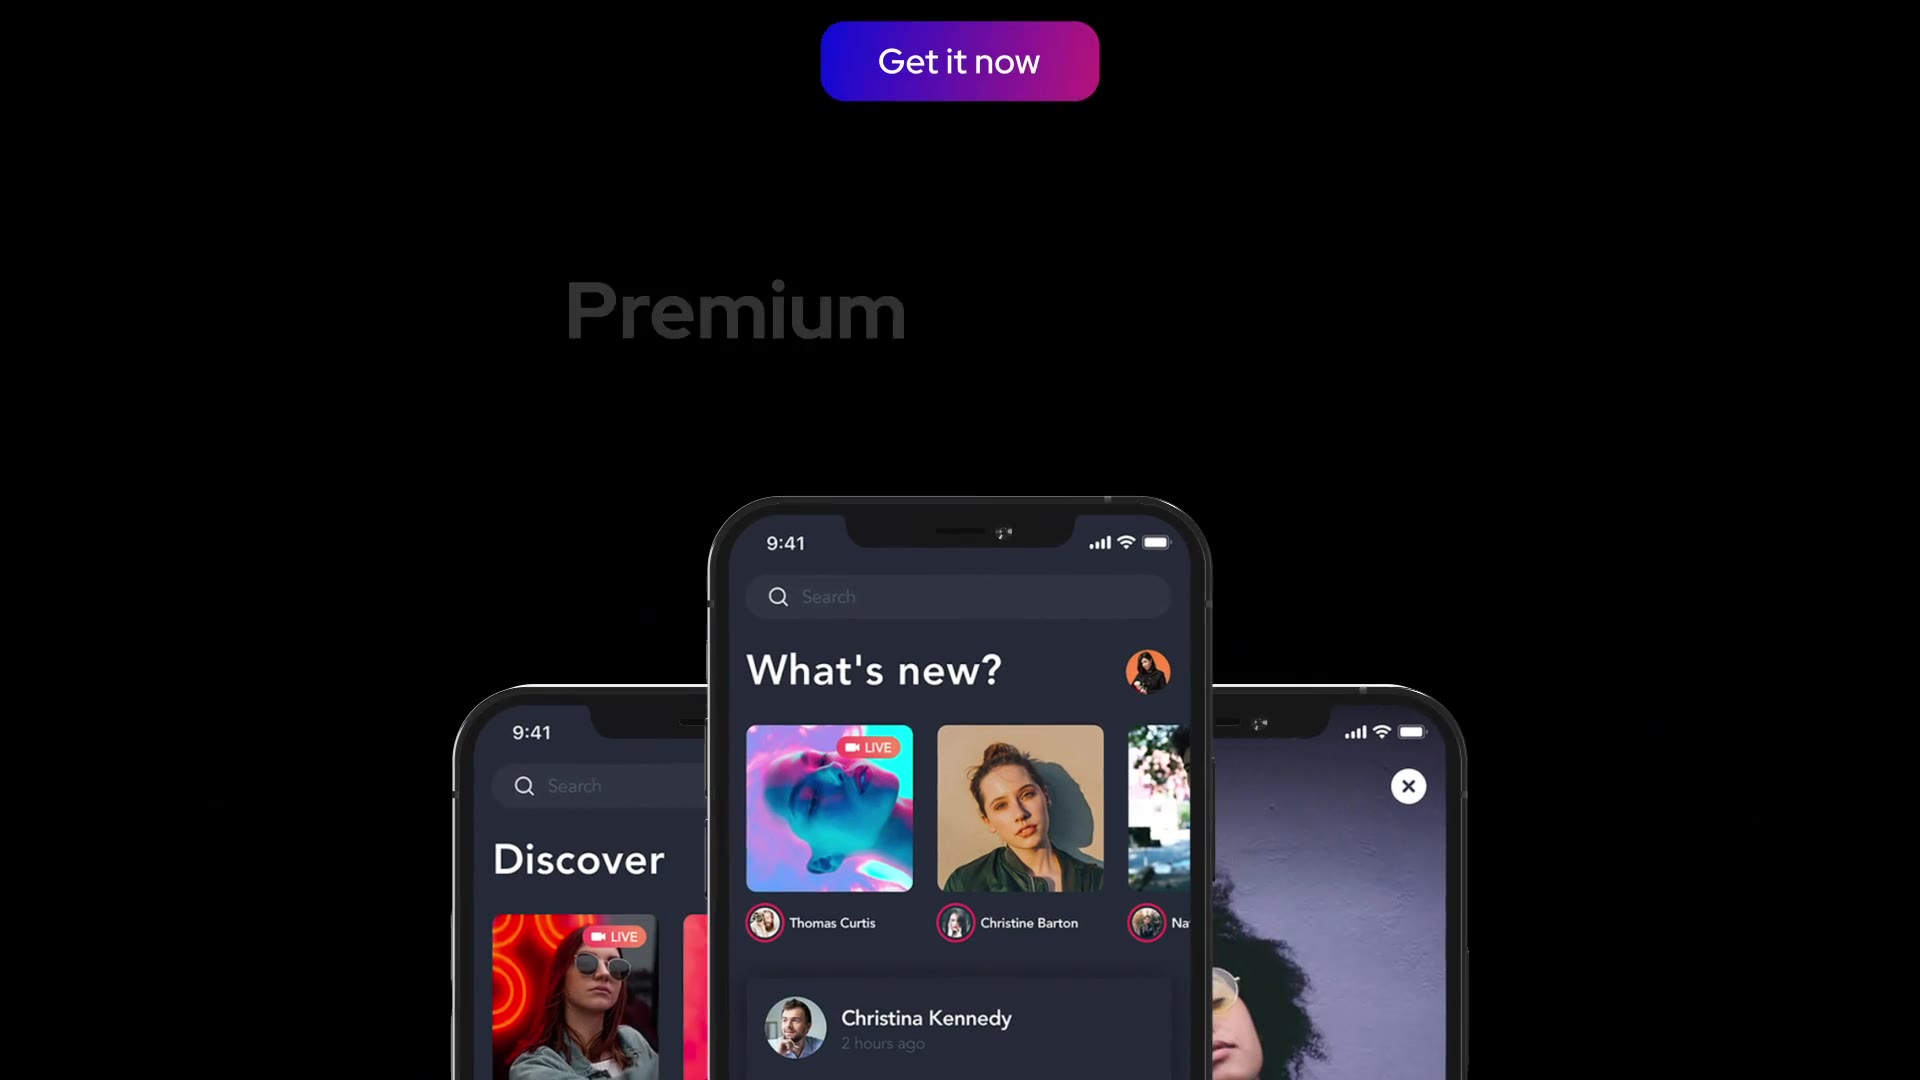 Premium Clean App Promo for Premiere Pro Videohive 33585434 Premiere Pro Image 11